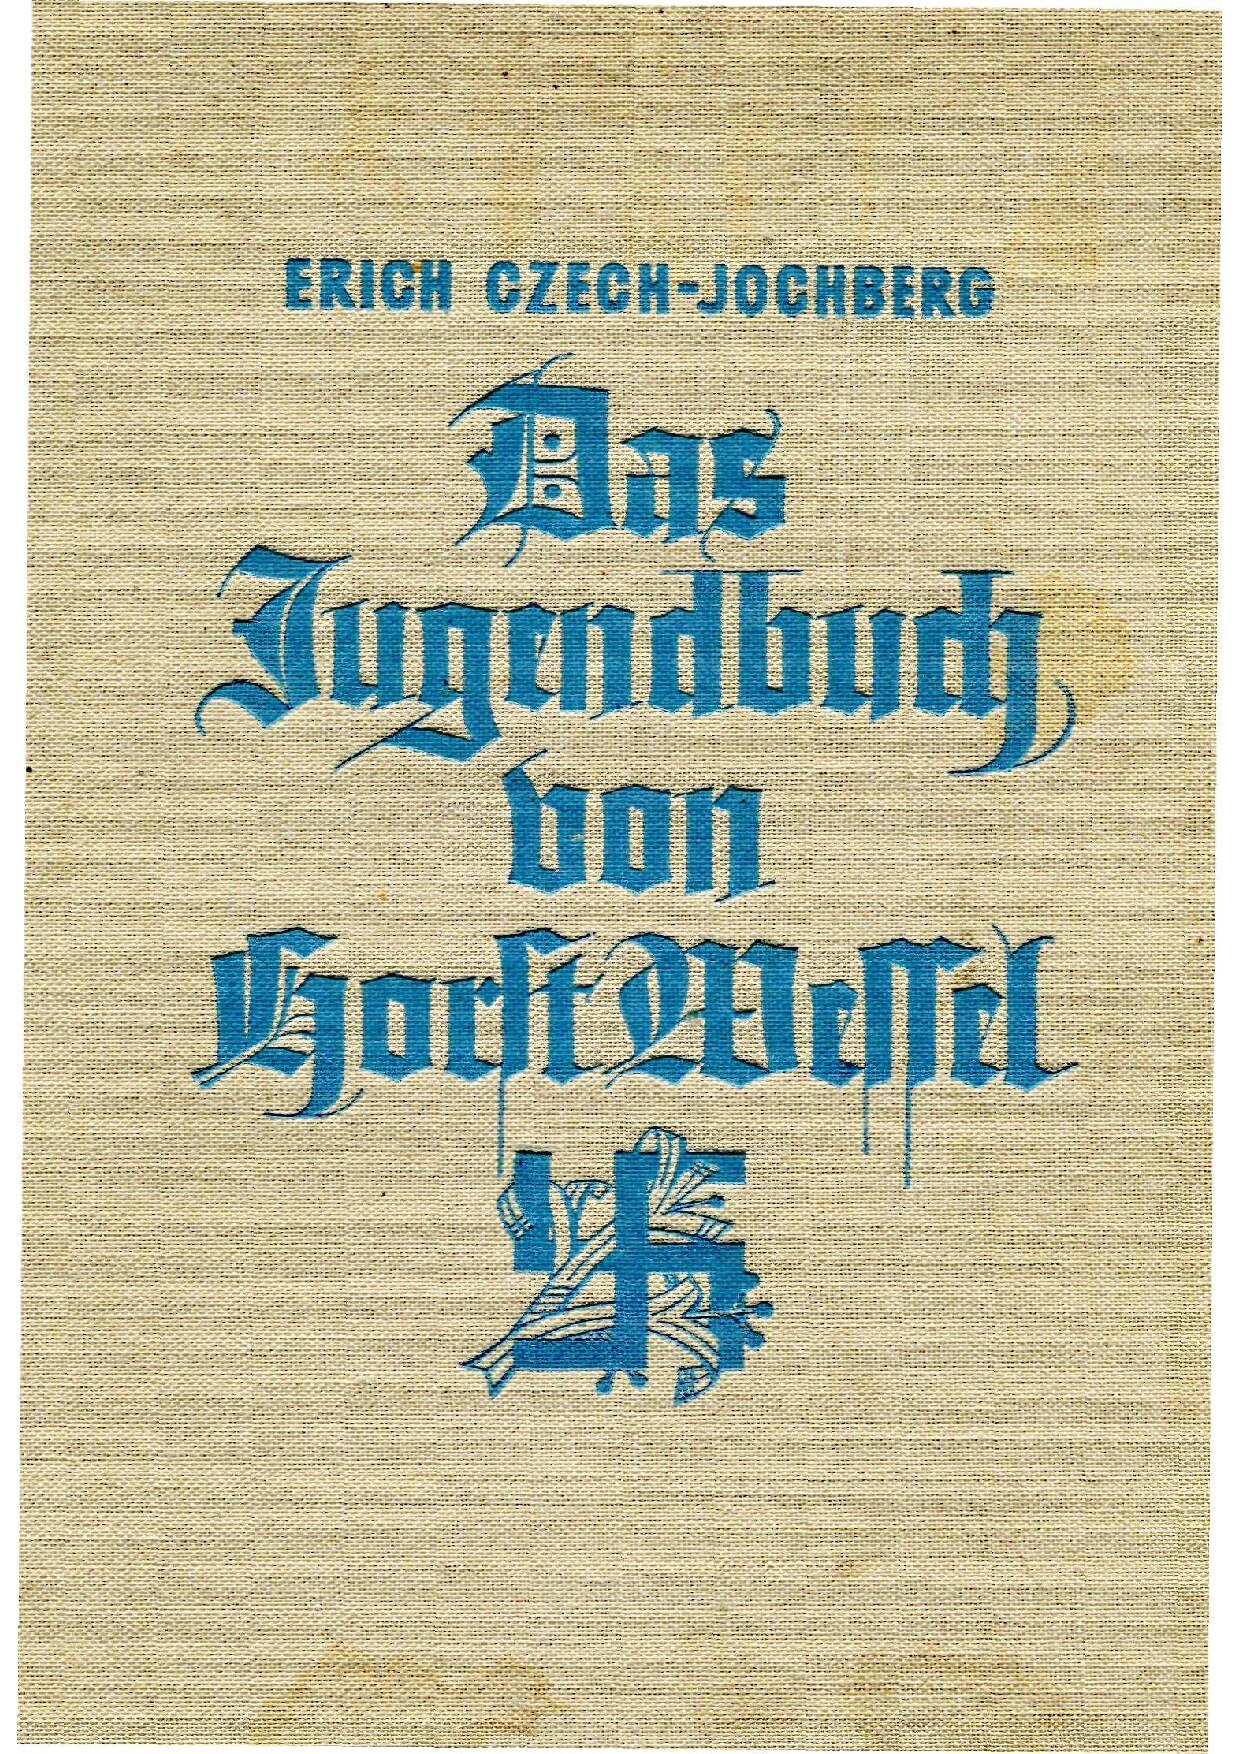 Das Jugendbuch von Horst Wessel